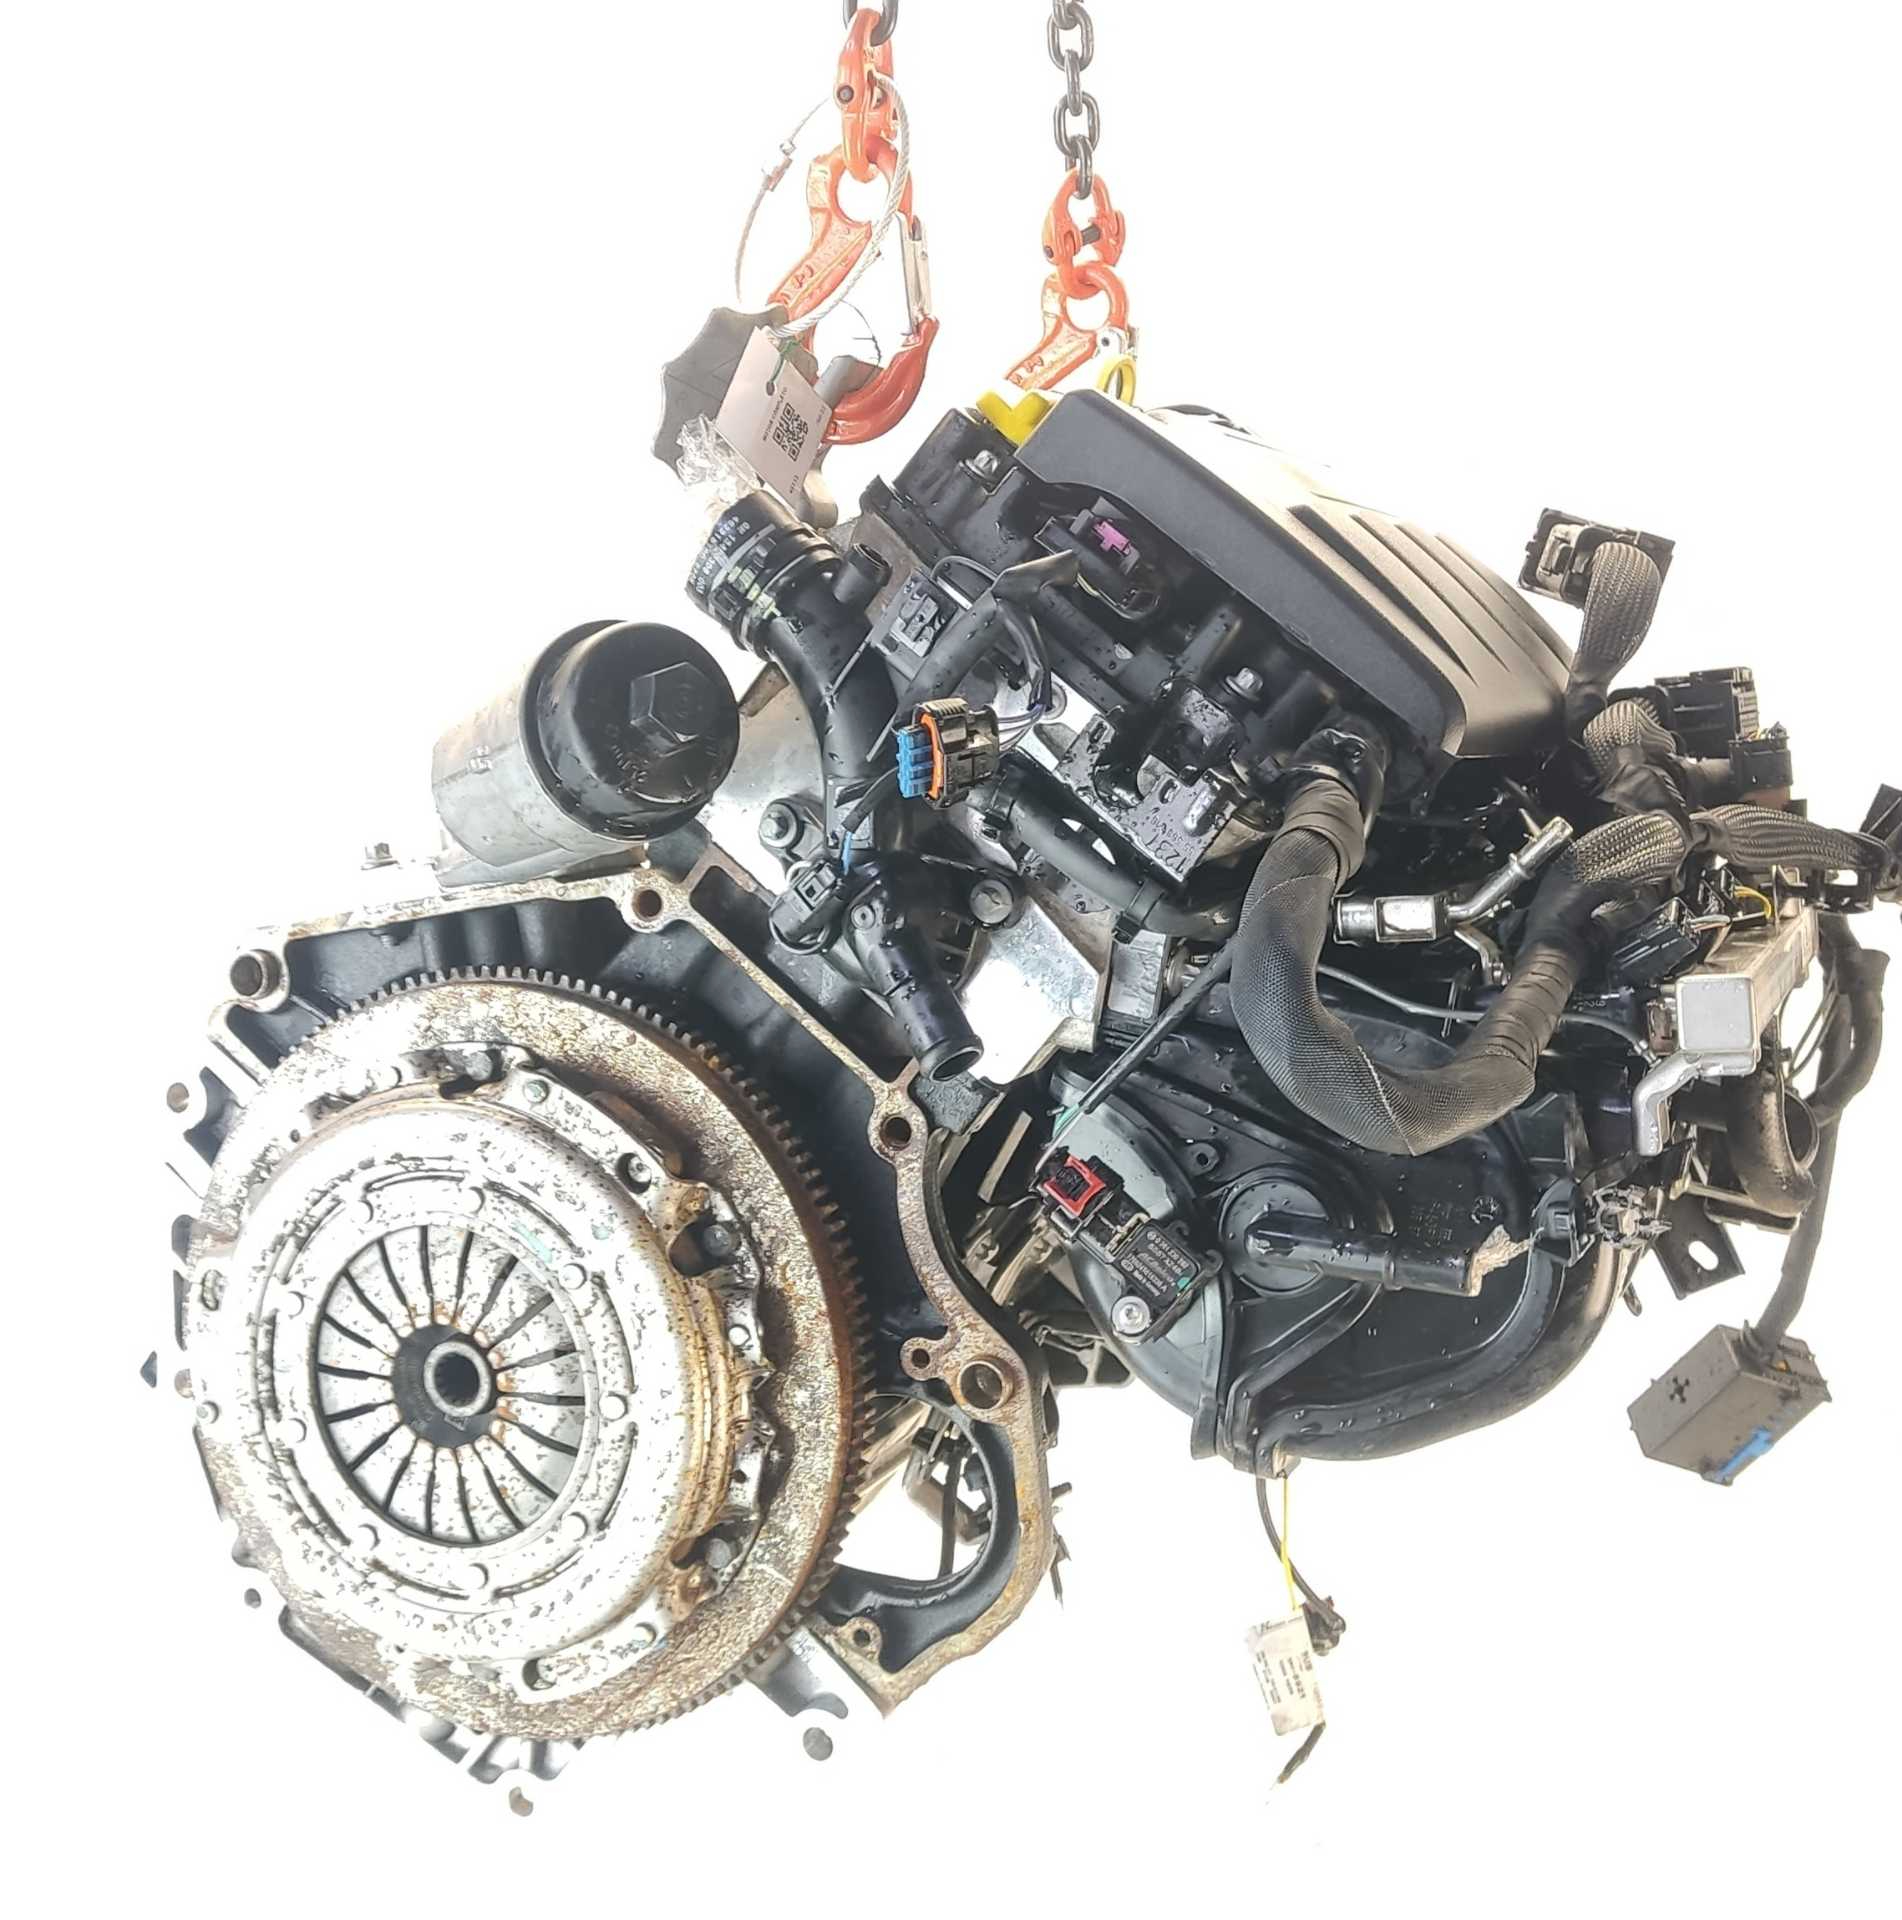 MOTOR OPEL CORSA E 1.2 (08, 68) (51 KW / 69 CV) (09.2014 - ...)